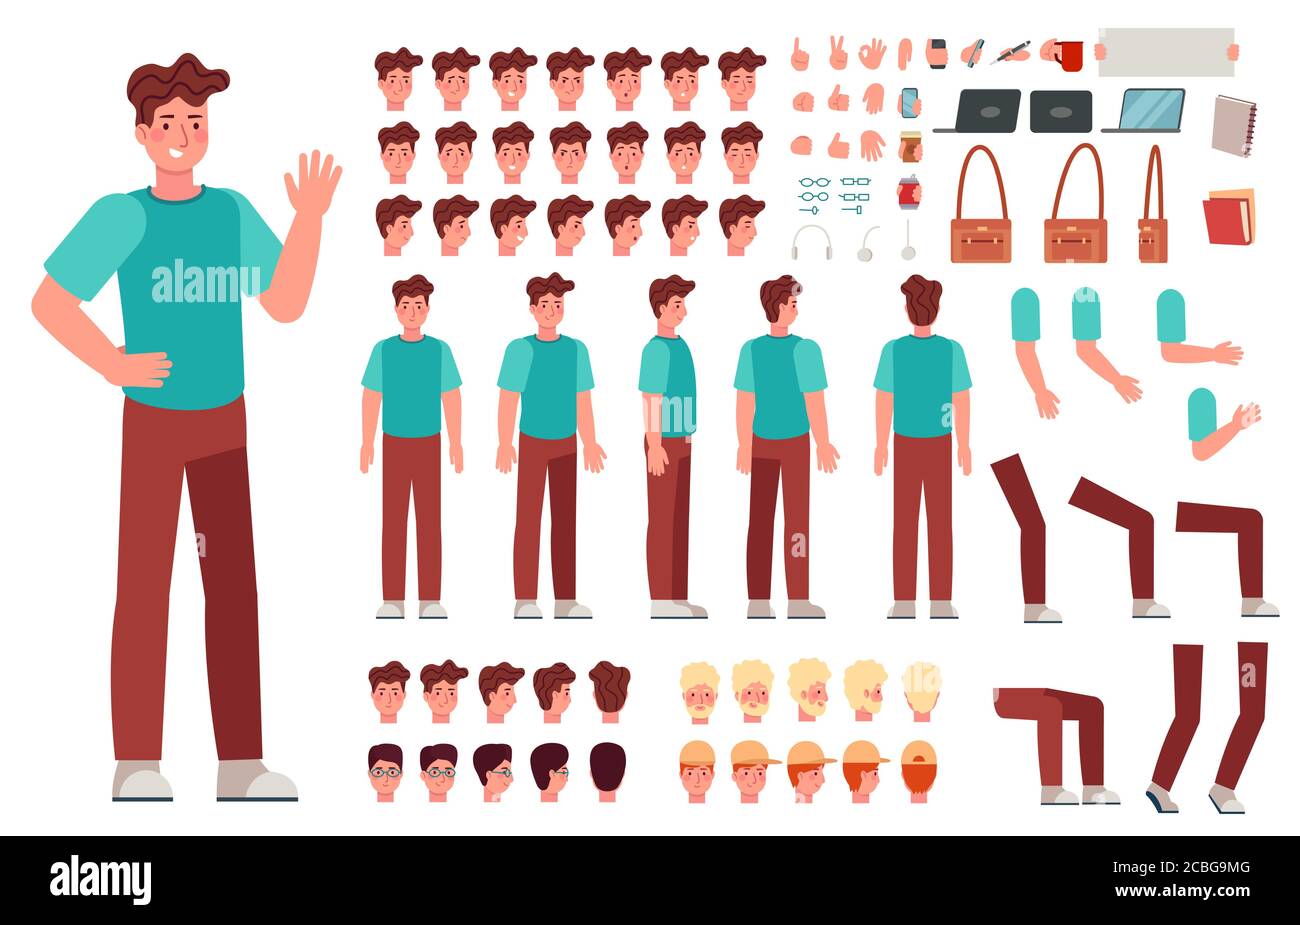 Cartoon männlichen Charakter-Kit. Mann Animation Körperteile, Kerl in Freizeitkleidung. Boy Konstruktor mit Handgesten und verschiedenen Köpfen Vektor-Set Stock Vektor